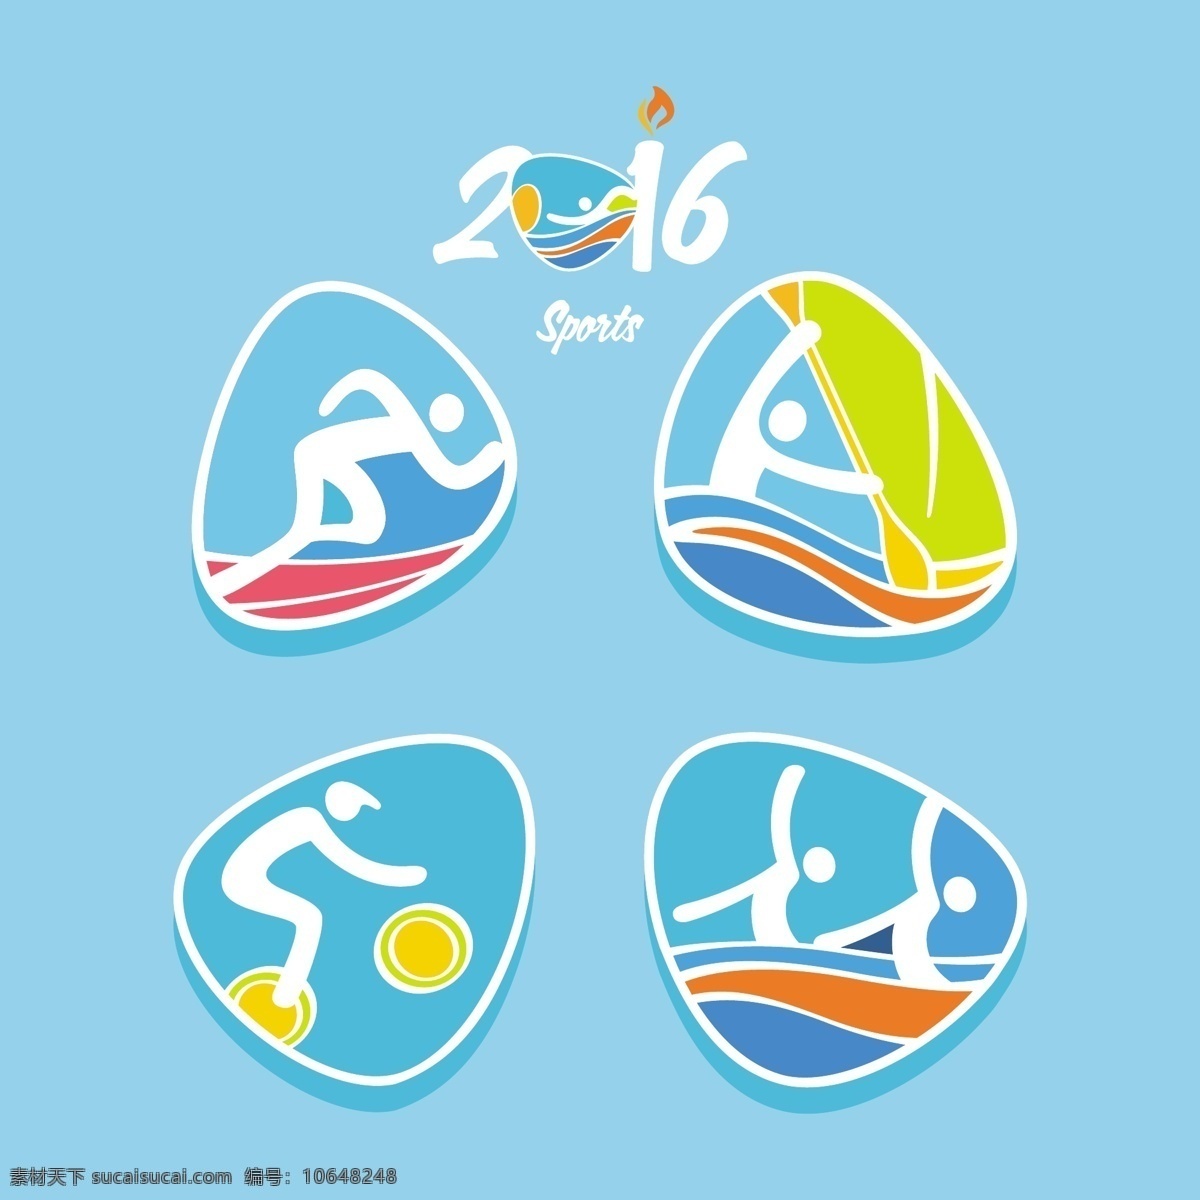 里约 奥运会 体育 2016 里约奥运会 体育标签 青色 天蓝色